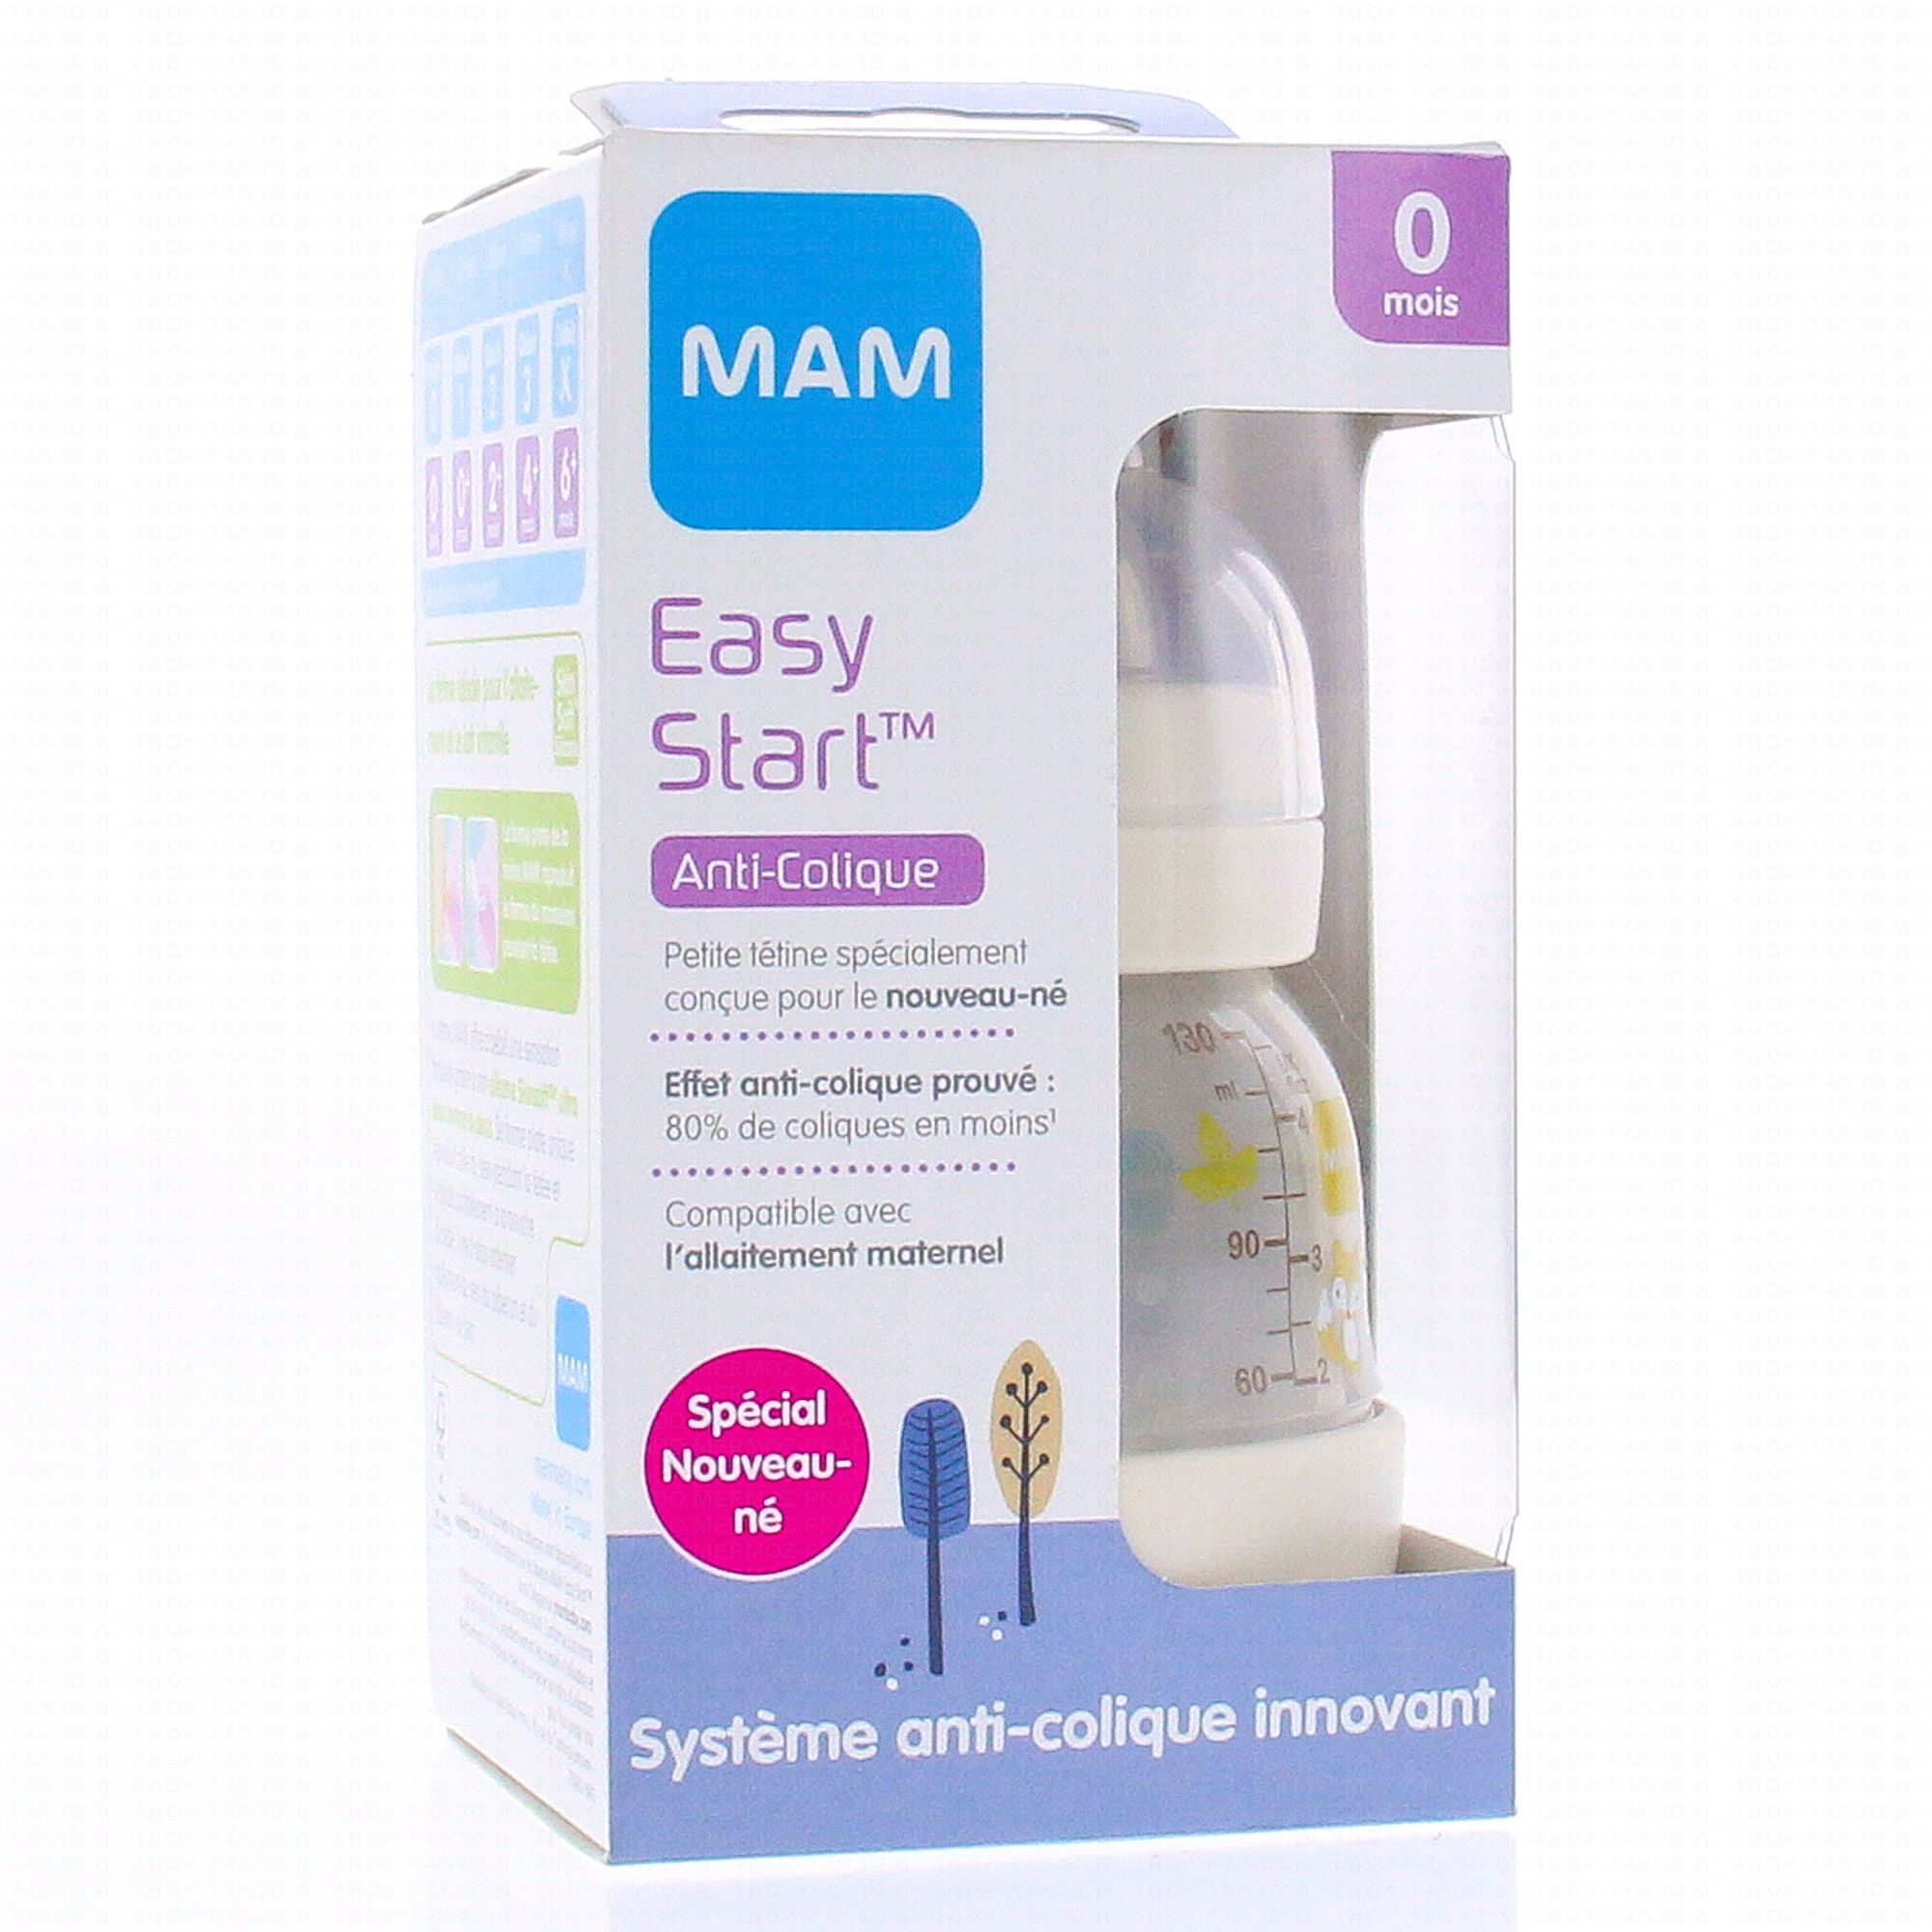 MAM Easy start biberon anti-colique débit 0 130ml - Parapharmacie Prado  Mermoz